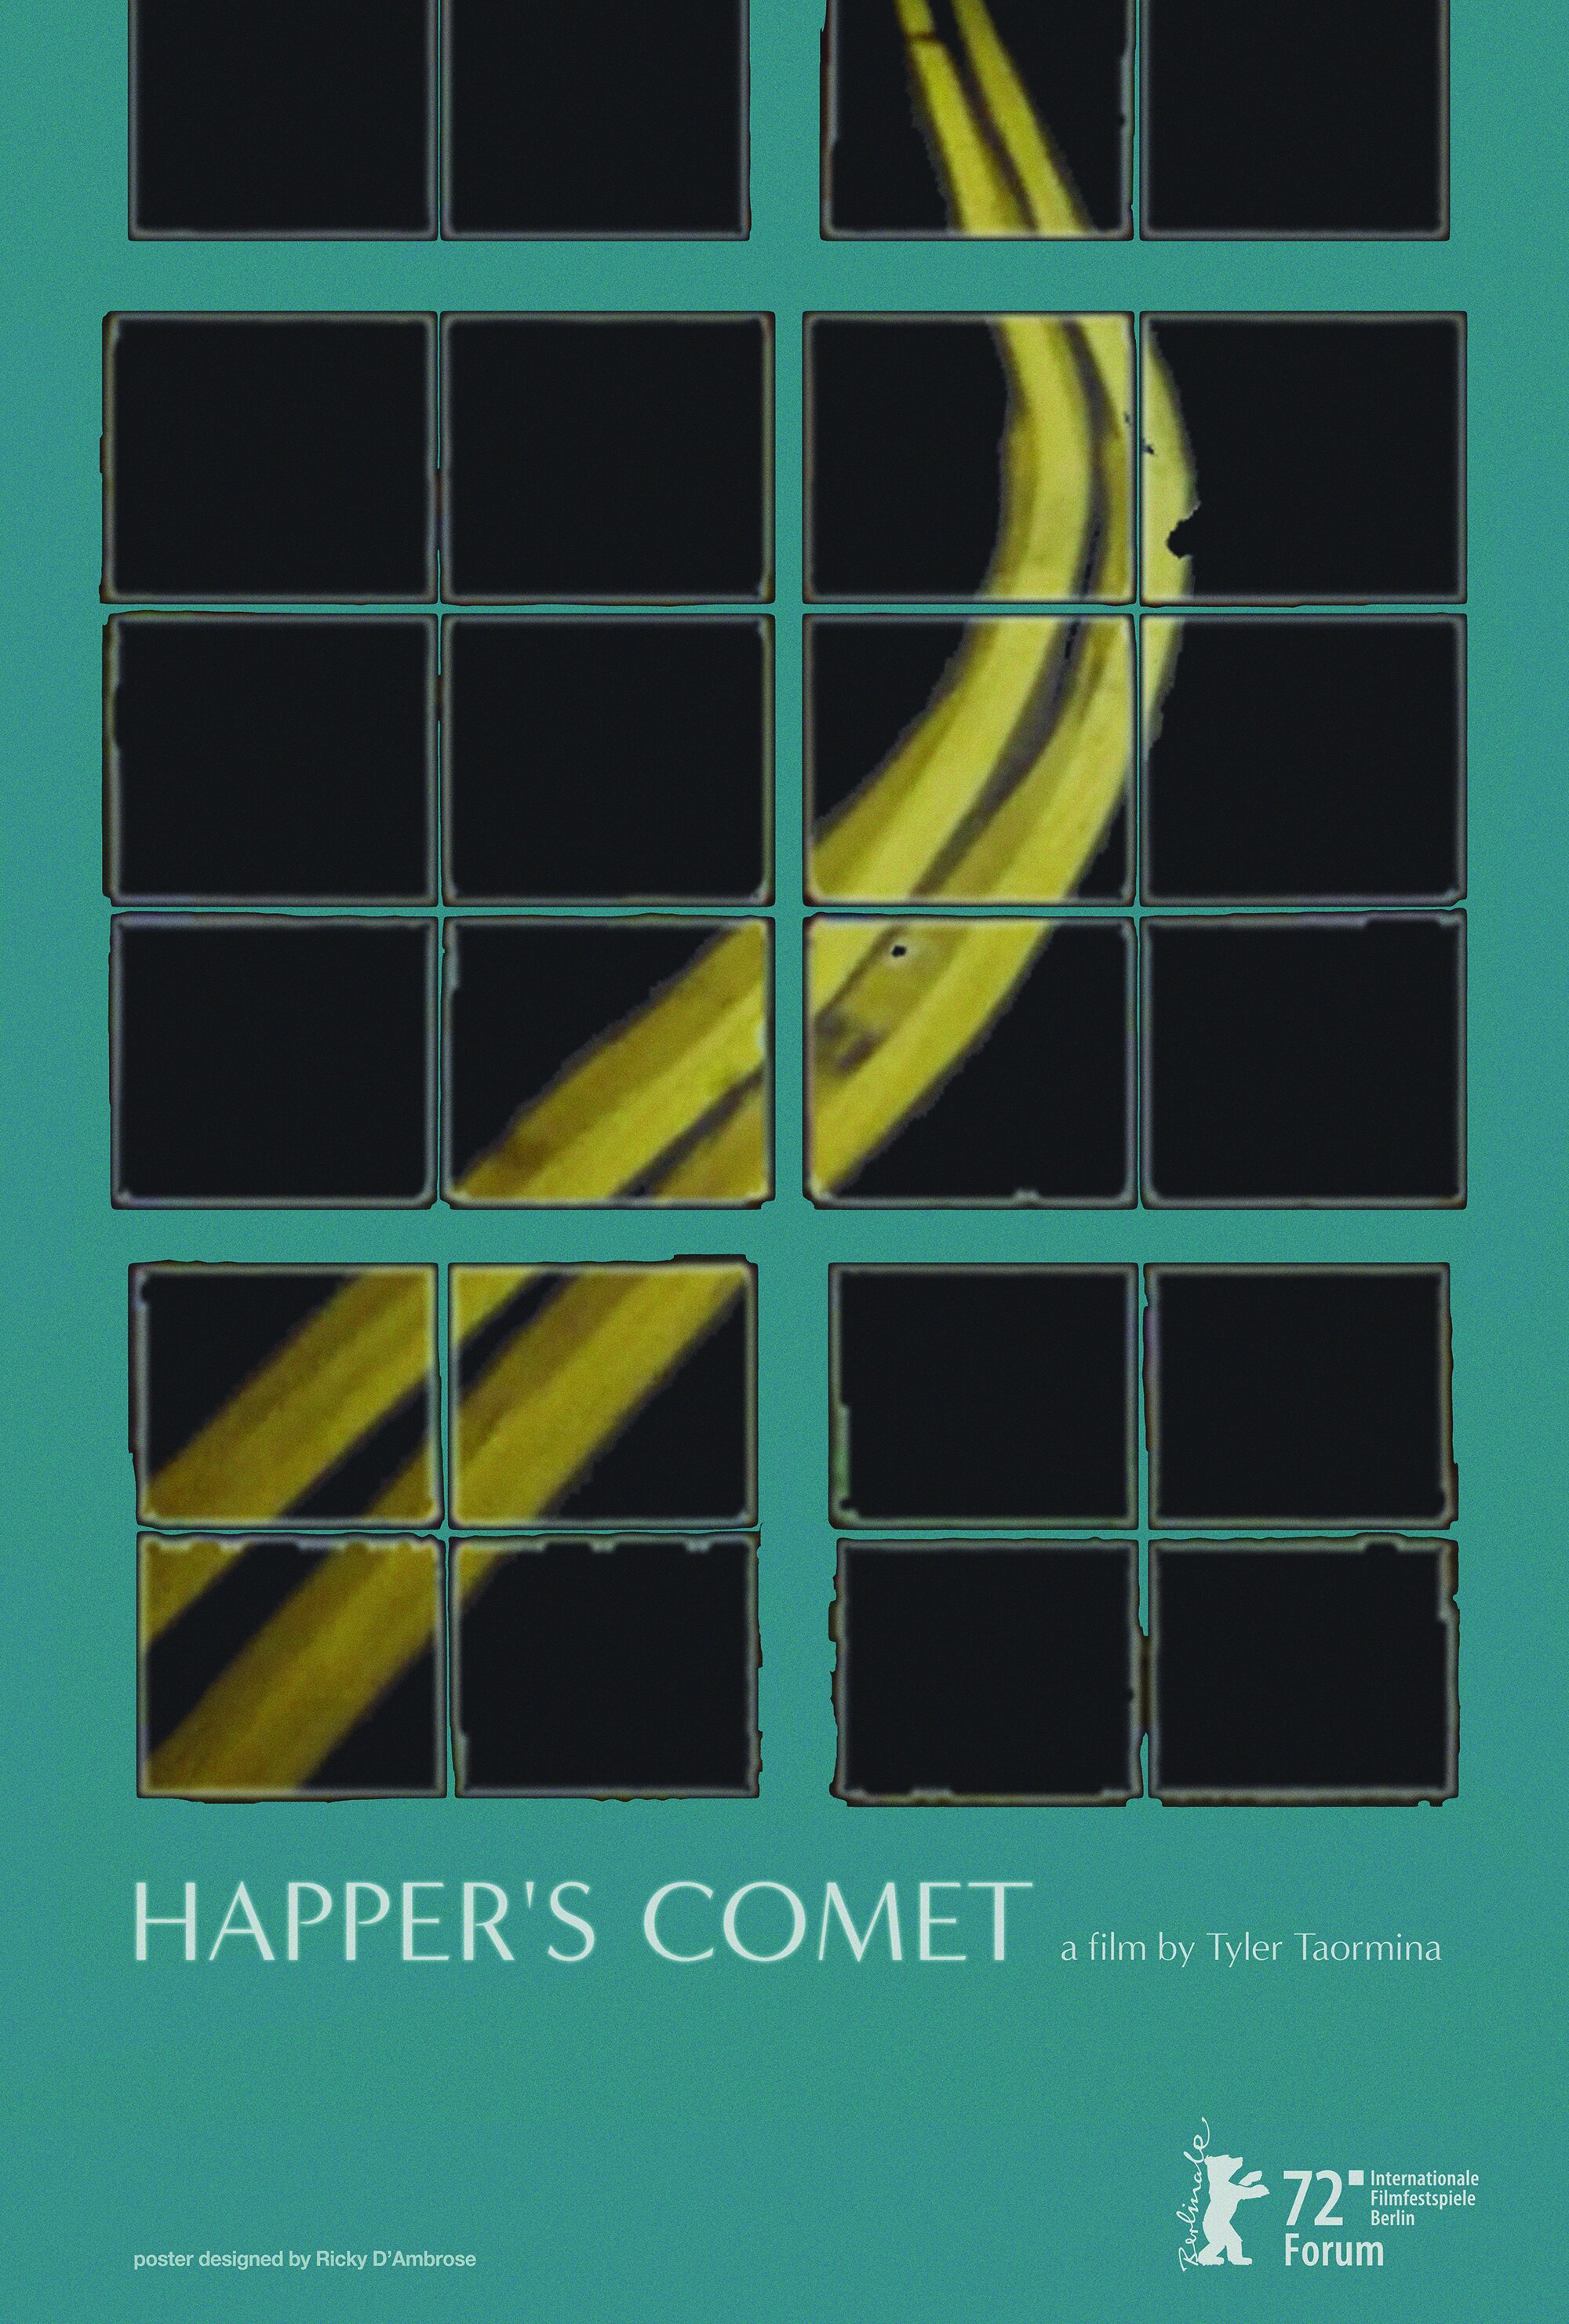 HAPPER'S COMET /// TYLER TAORMINA